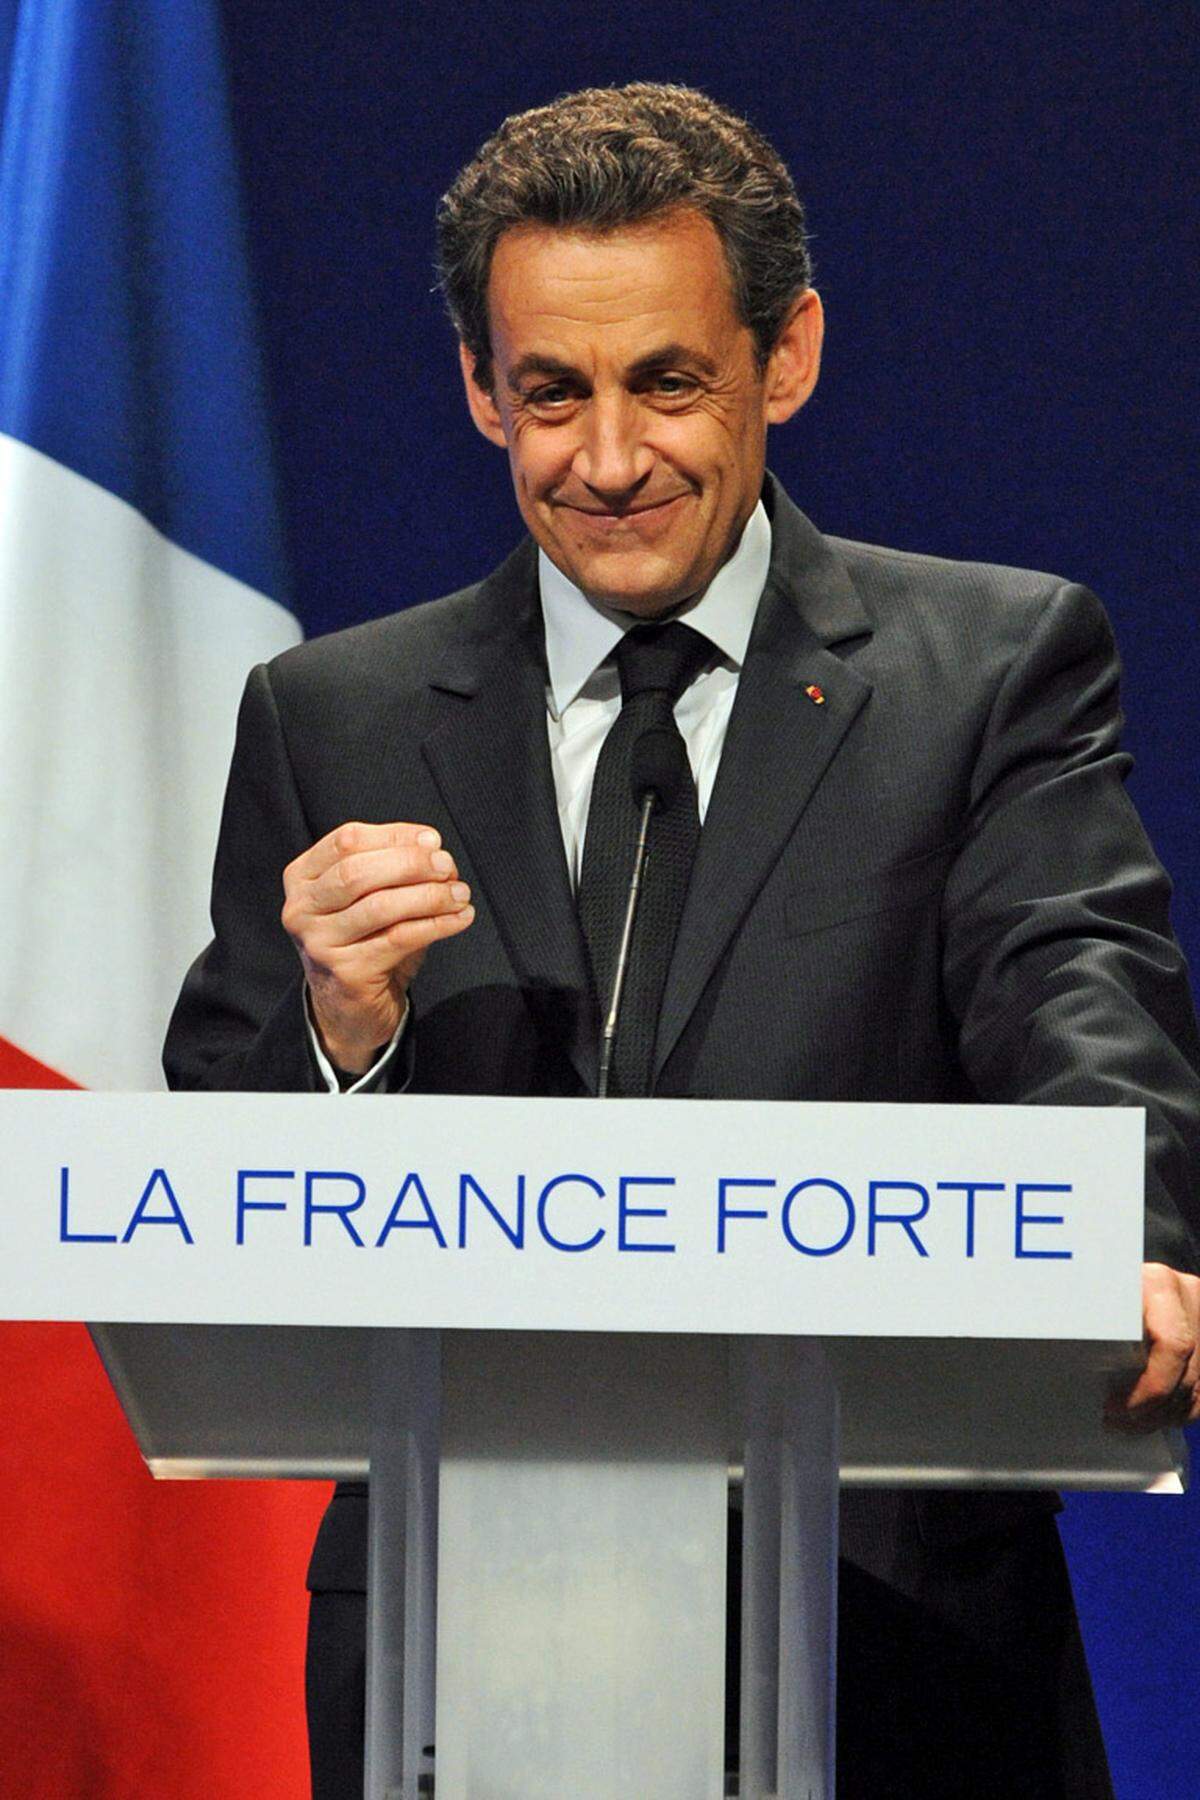 Umso schwieriger war es für Sarkozy, in der Euro-Krise ab Sommer 2011 glaubwürdig seinen Sparkurs zu vermitteln. Schon seine Rentenreform aus dem Herbst 2010 zur Erhöhung des Renteneintrittsalters auf 62 Jahre hatte Millionen Franzosen auf die Straße getrieben. Es brauchte erneut drastische Einschnitte. Sarkozy warnte daher vor einer "Explosion Europas", um den Franzosen die Dringlichkeit vor Augen zu führen. Den Verlust der AAA-Bonität konnte er dennoch nicht verhindern.